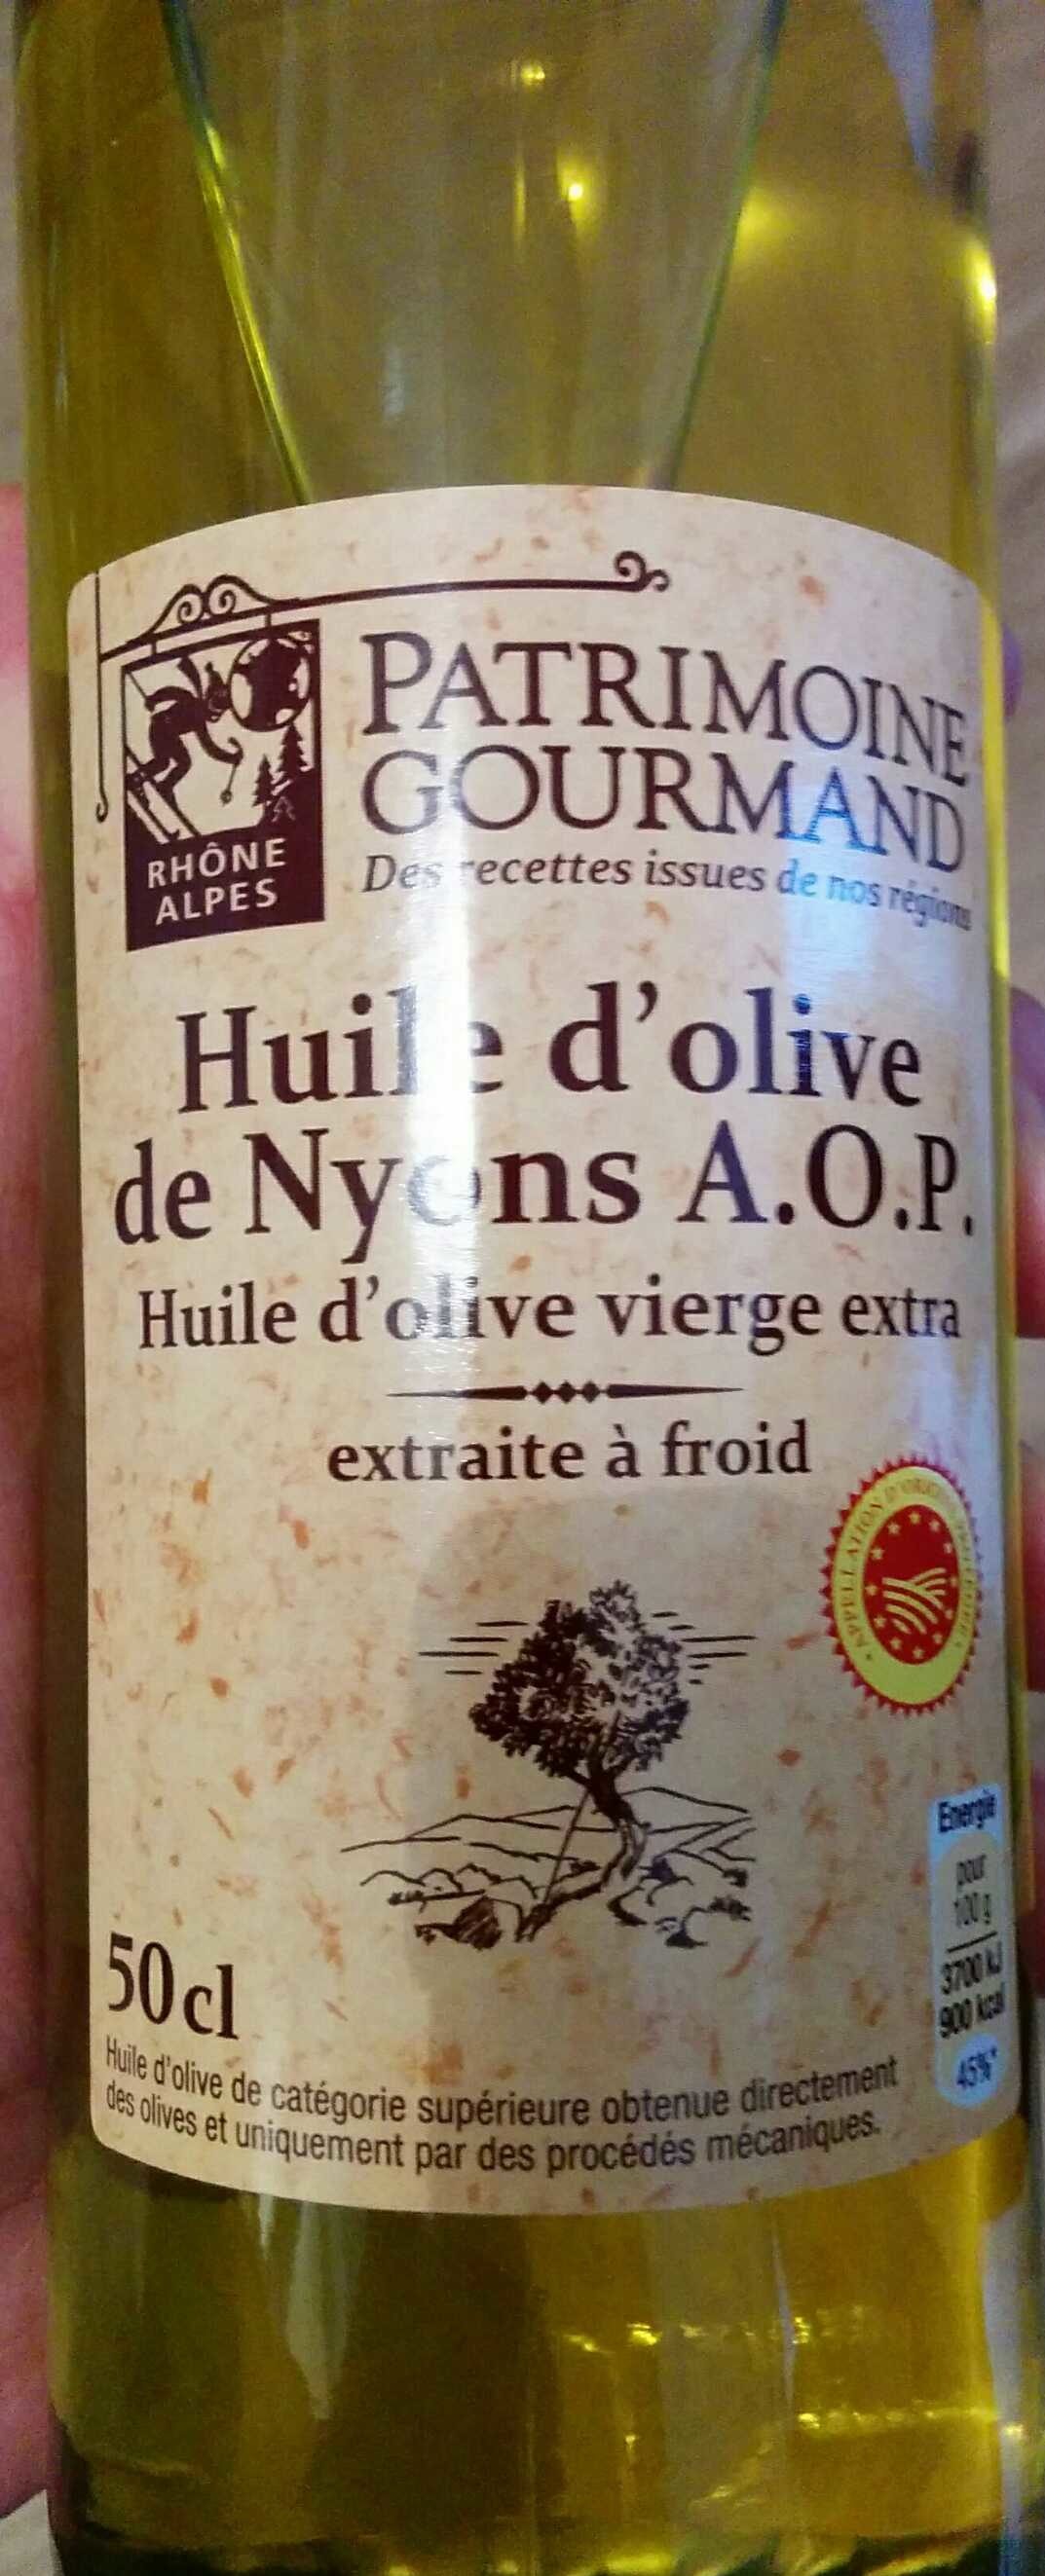 Huile d'olive de Nyons AOP - Product - fr